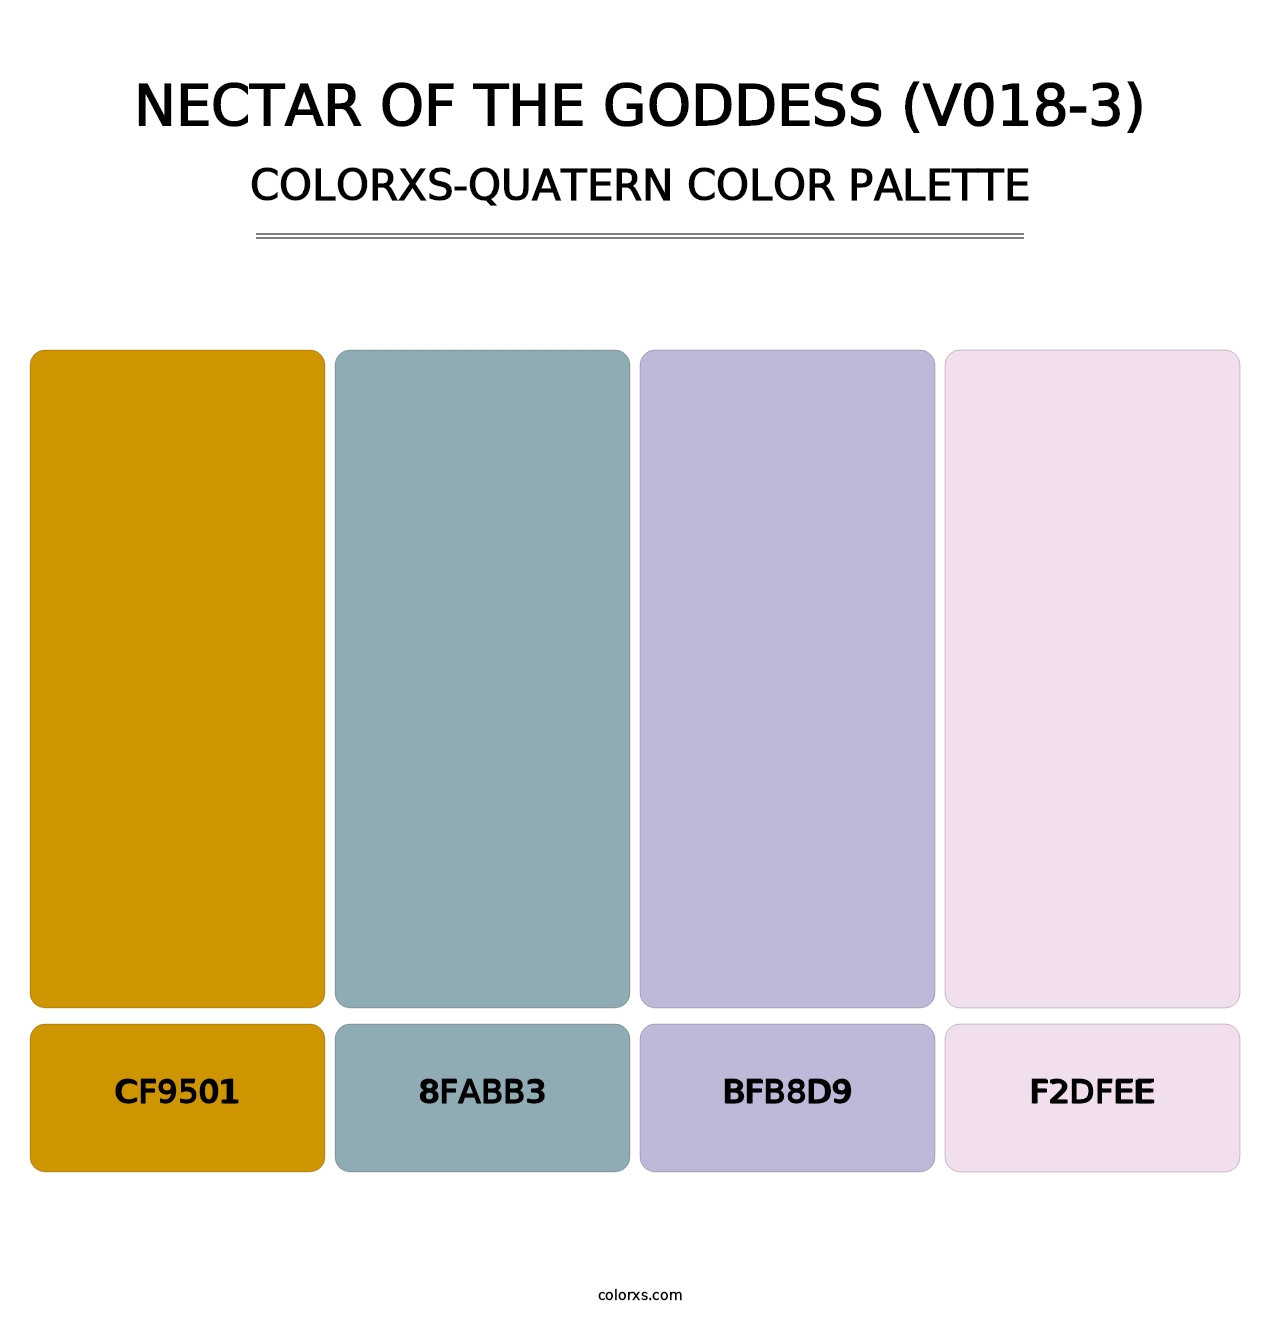 Nectar of the Goddess (V018-3) - Colorxs Quatern Palette